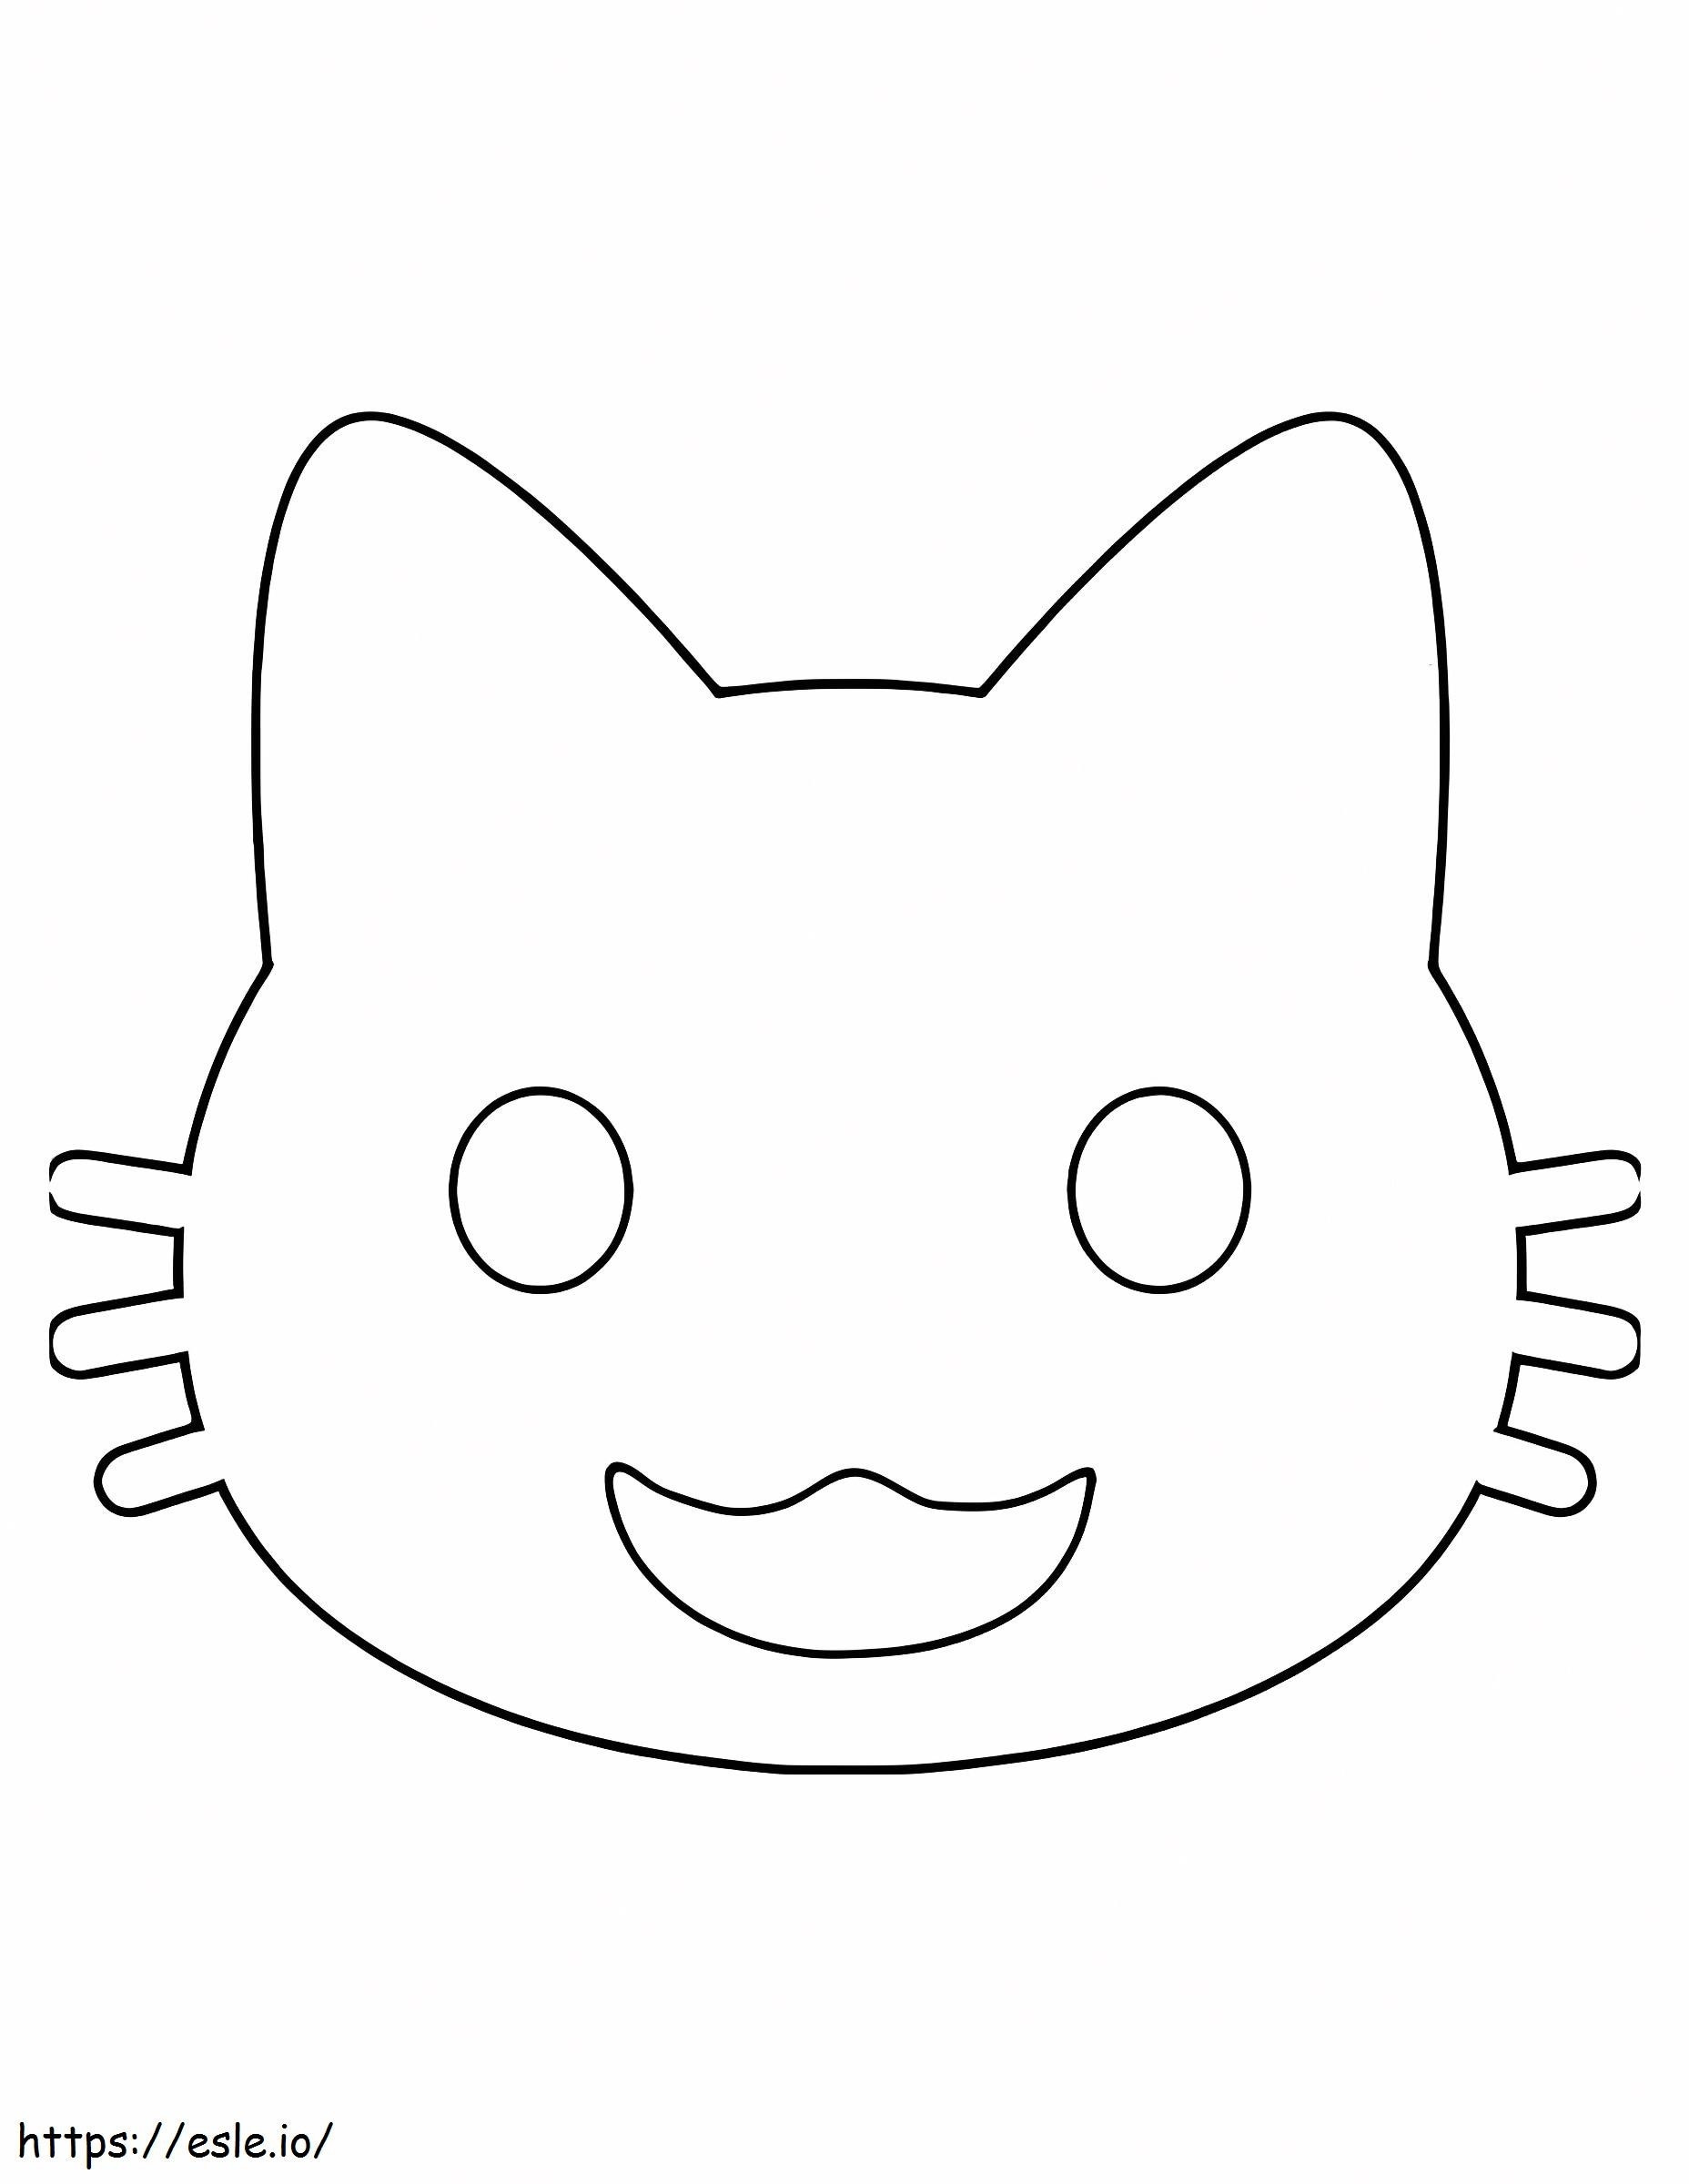 Emoji śmiesznego kota kolorowanka